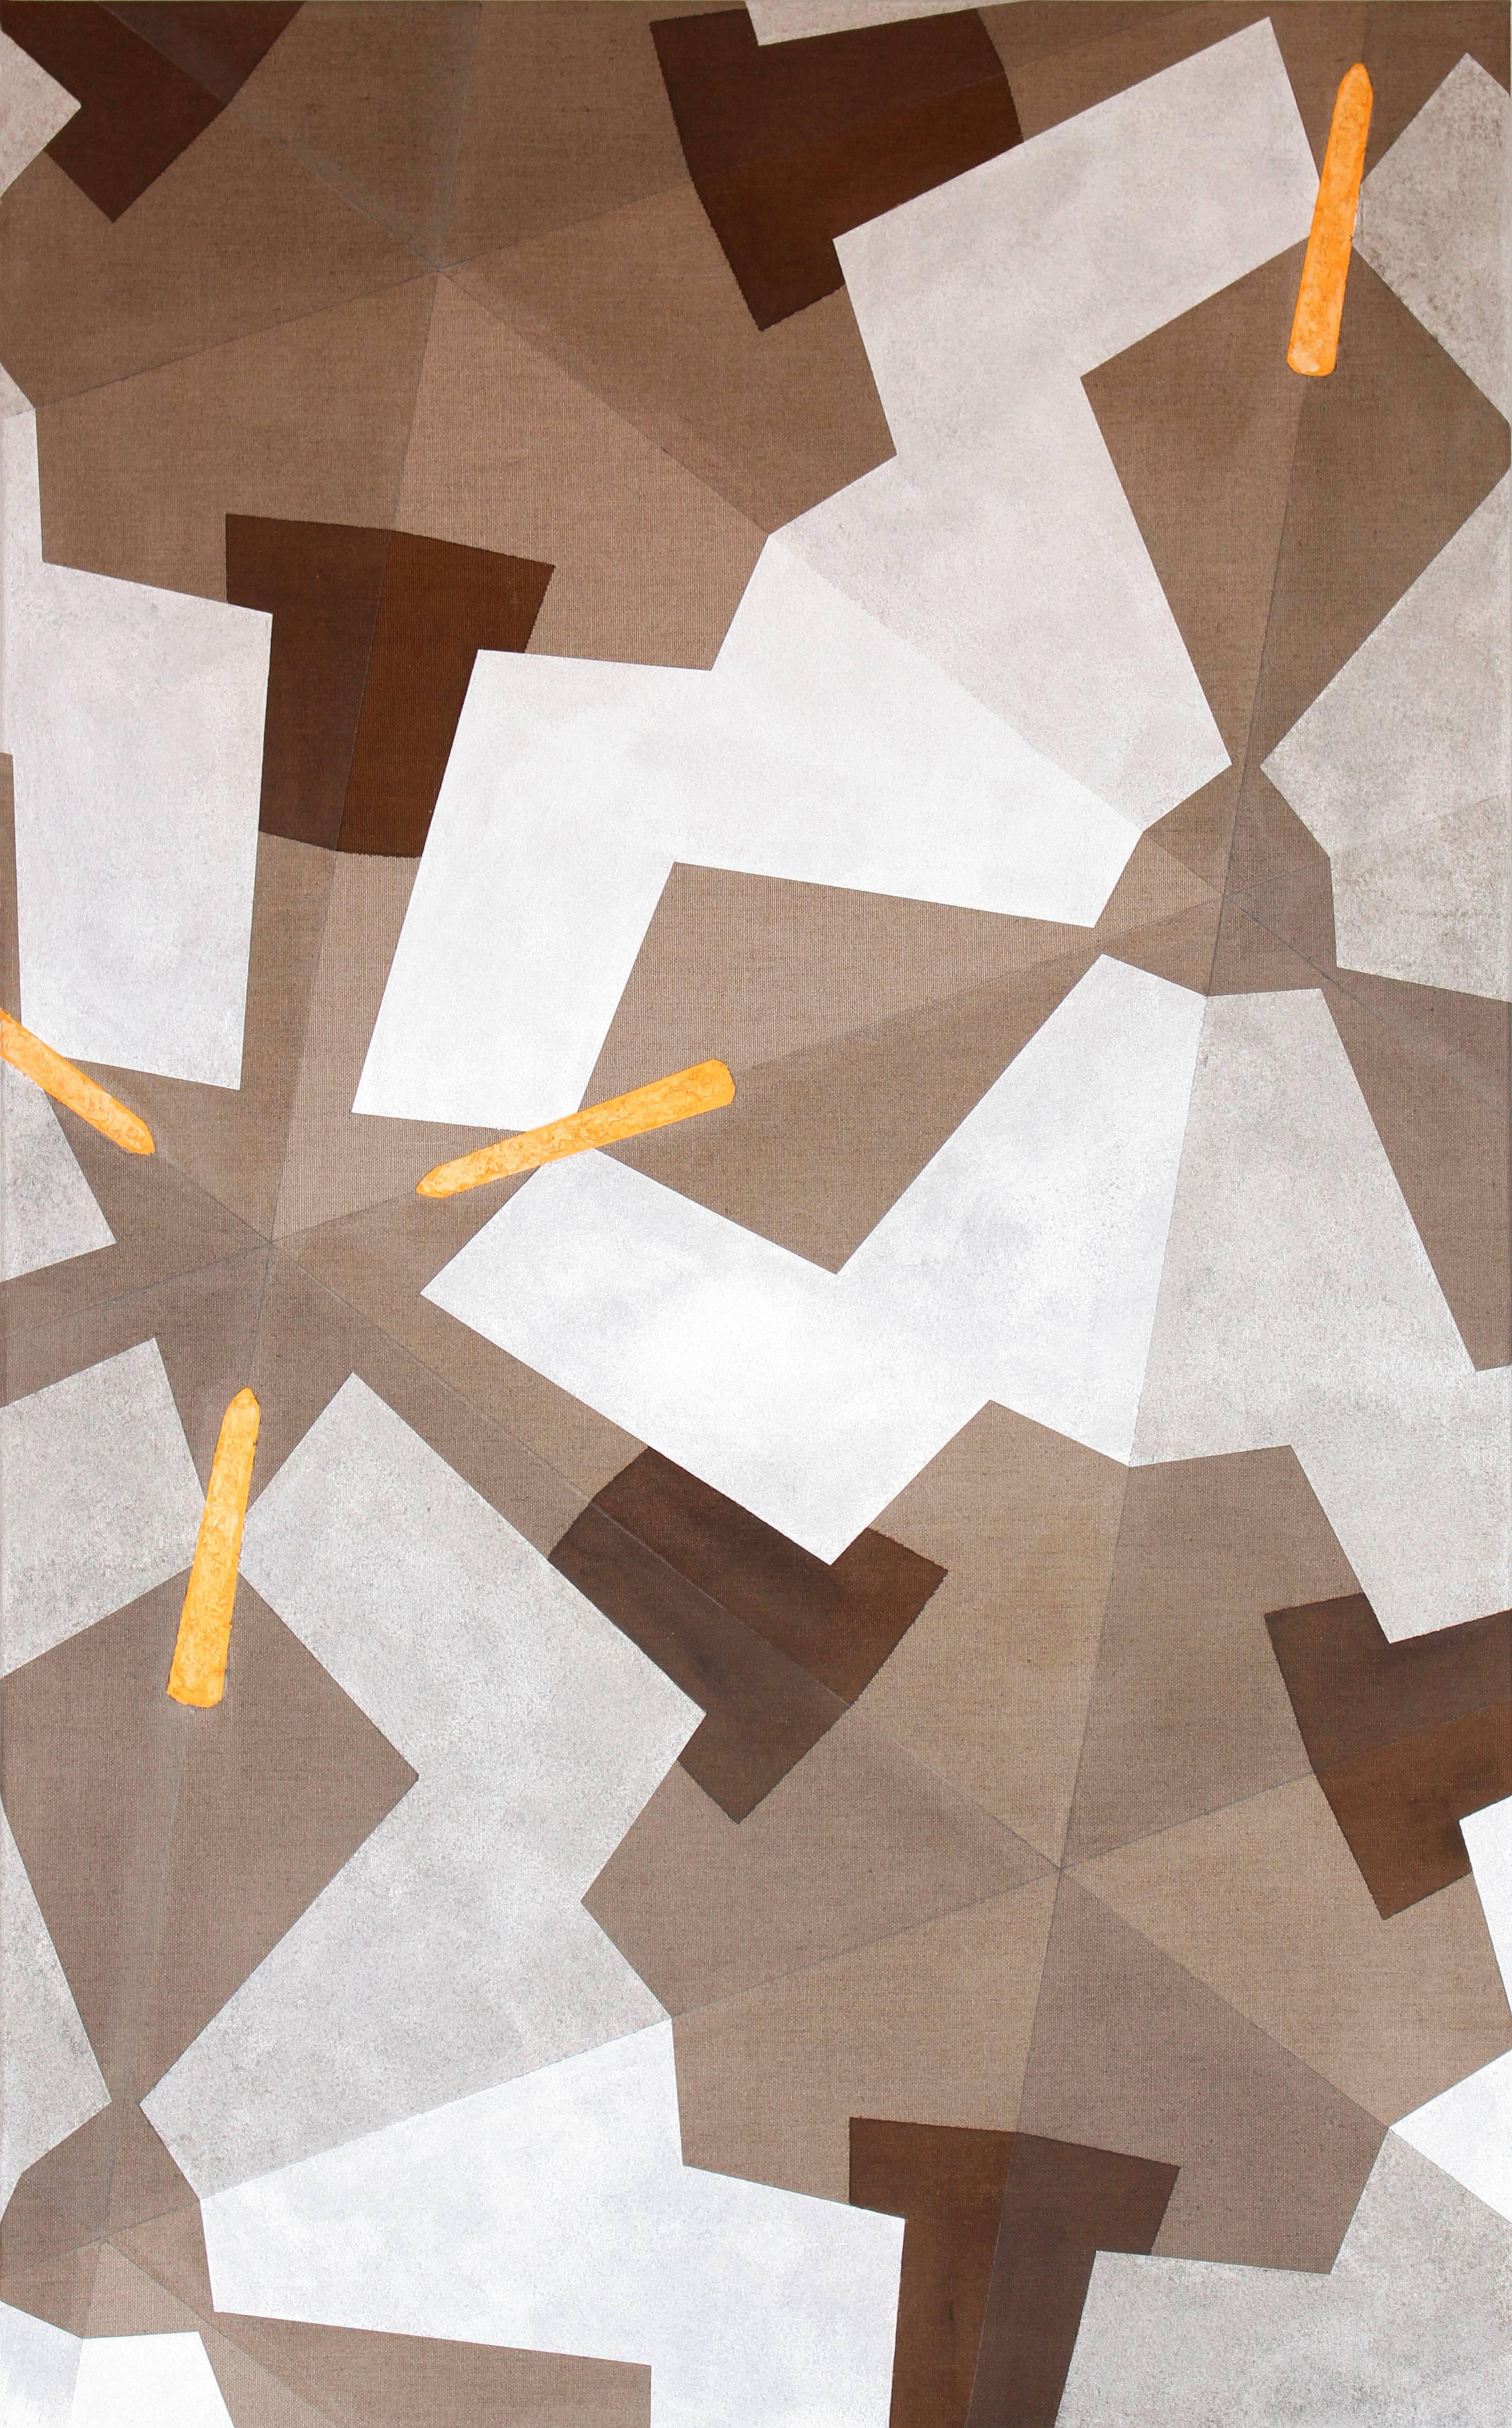 Acrylfarbe mit Sand und kleinen Holzteilen auf roher Leinwand, 2015. Hängefertig. Es kommt direkt aus dem Atelier des Künstlers.
Höhe 165 cm (64,96 Zoll), Breite 100 cm (39,37 Zoll).
Matrix In Creation gehört zu einer Reihe von mehr als 20 Gemälden,